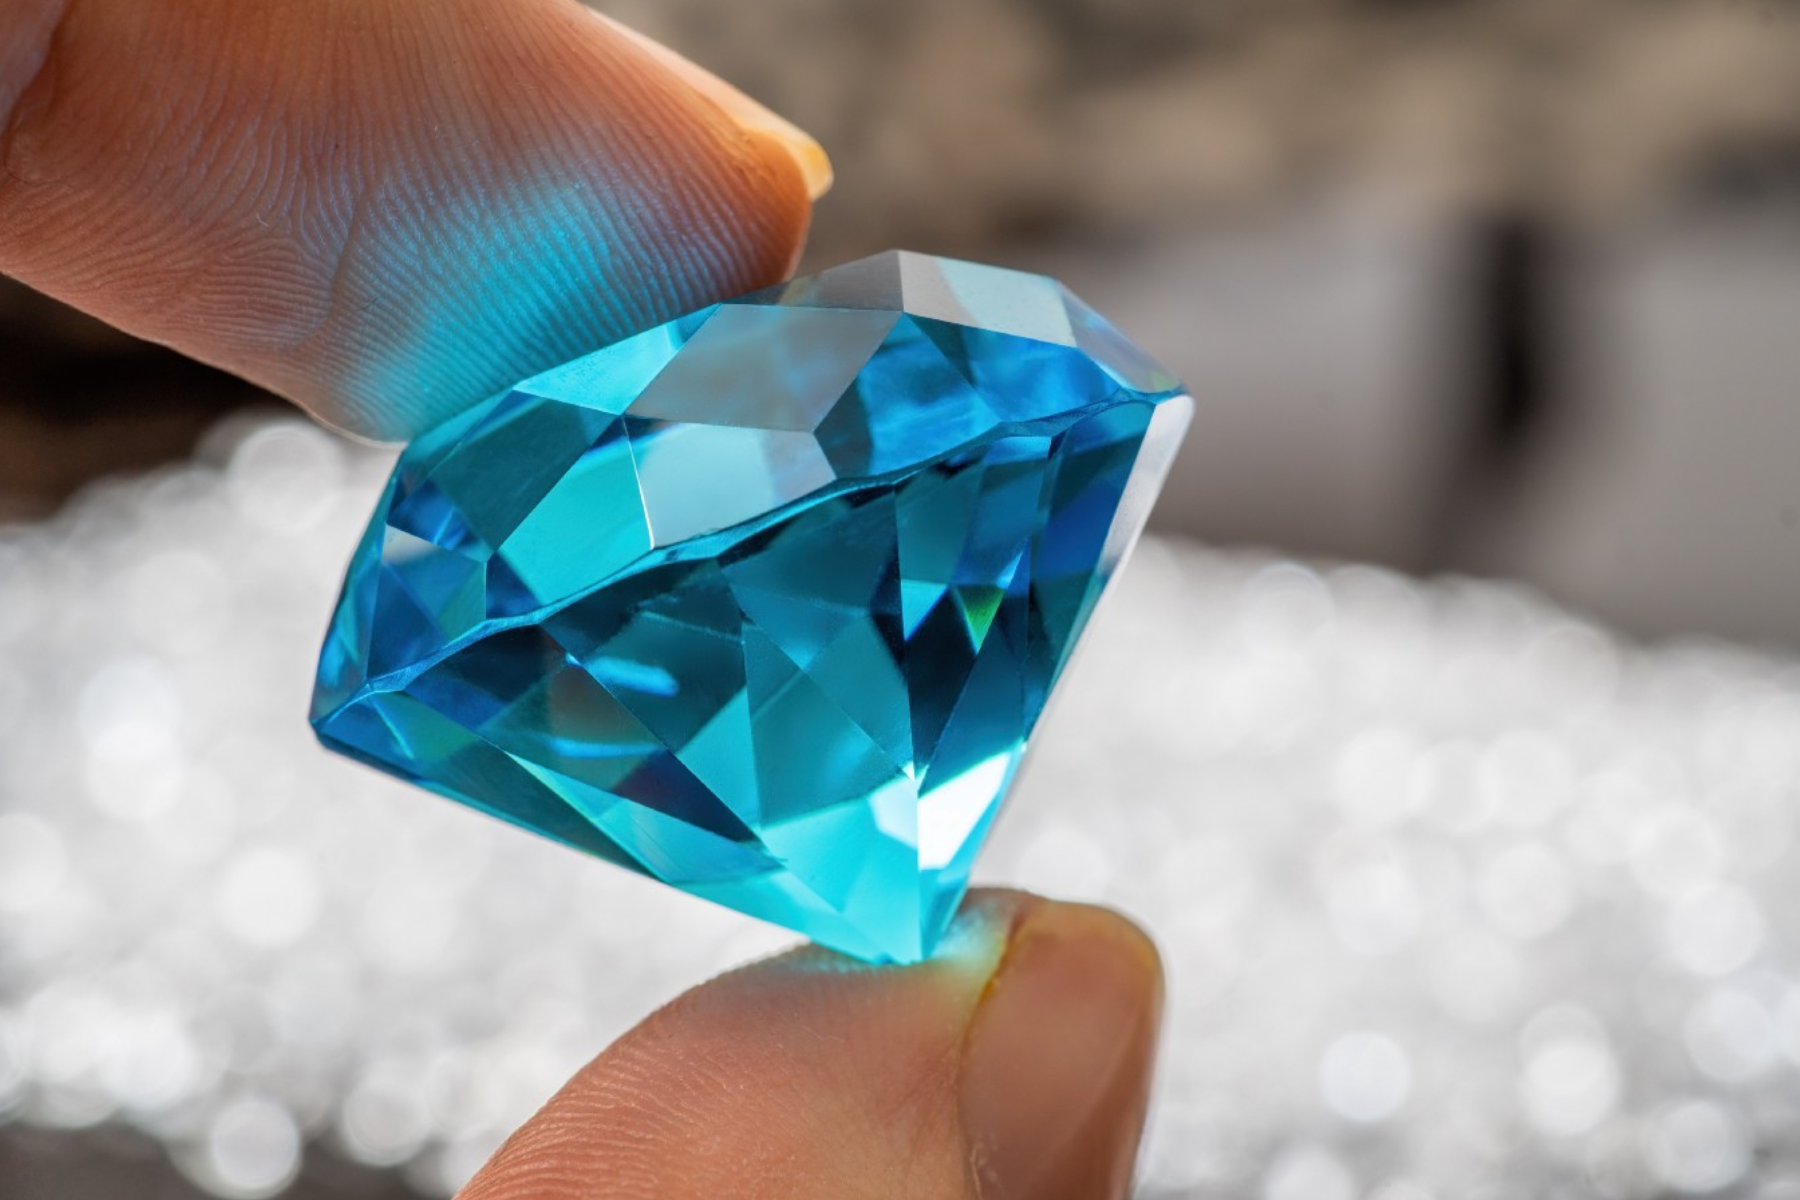 A hand inspecting a blue gem